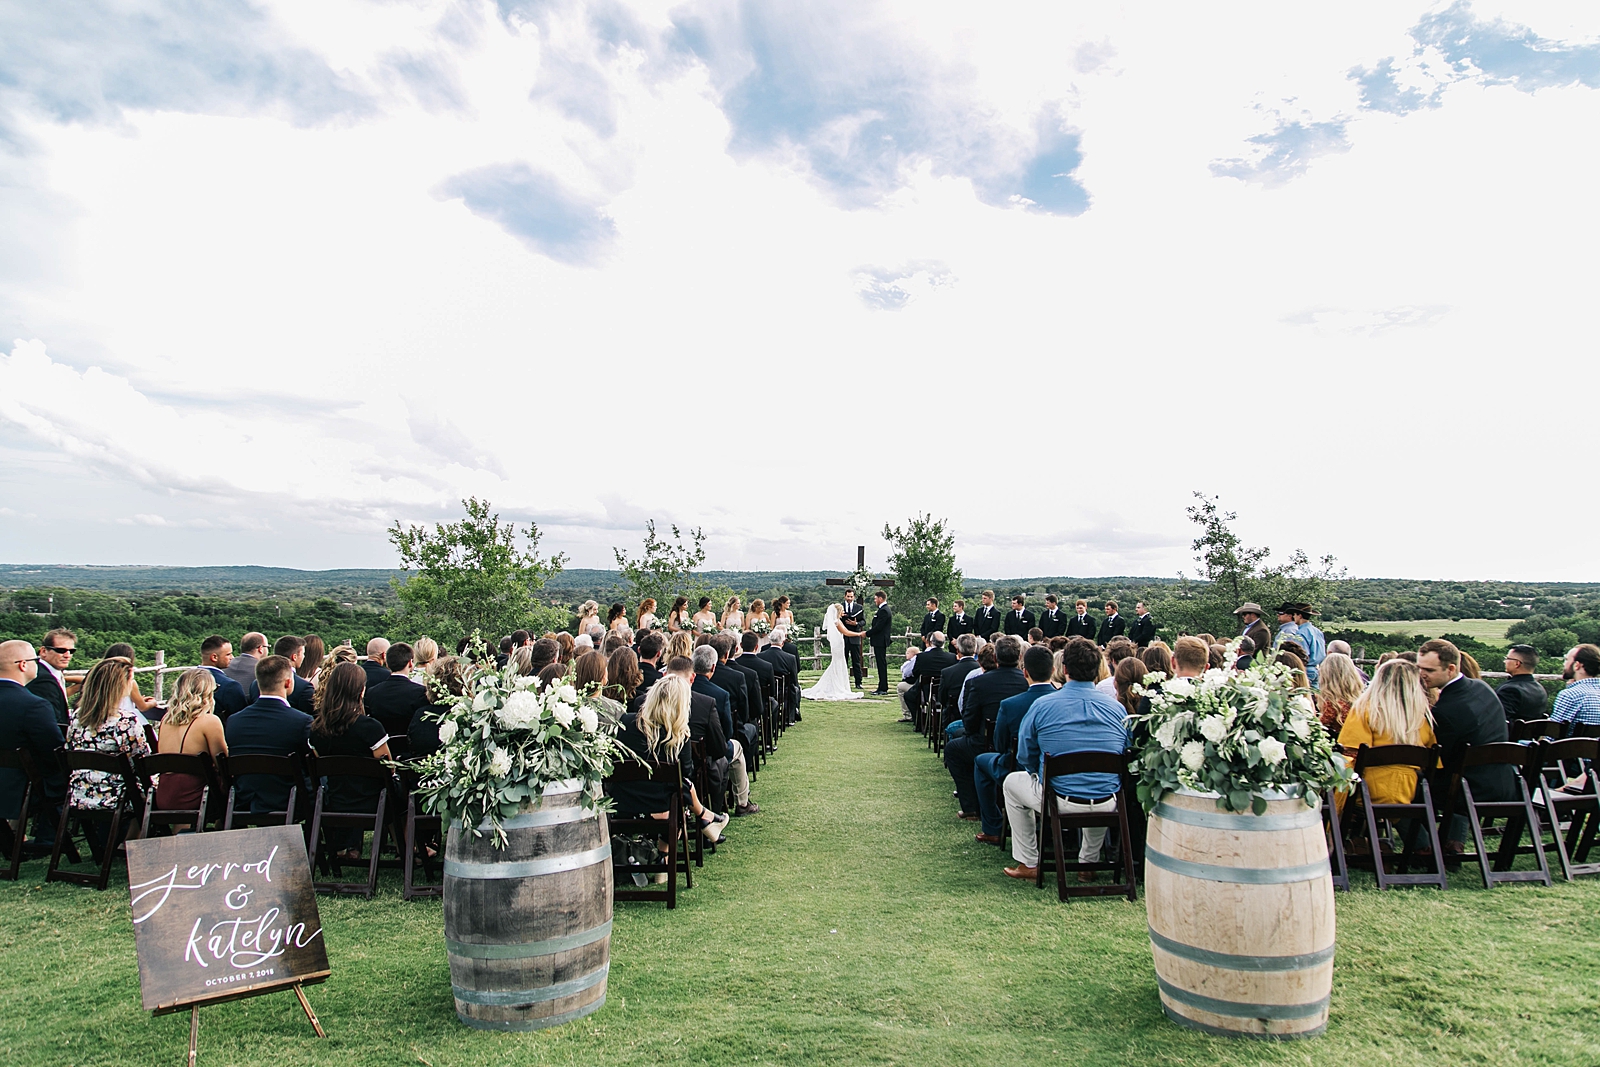  Dove Ridge Vineyard wedding ceremony